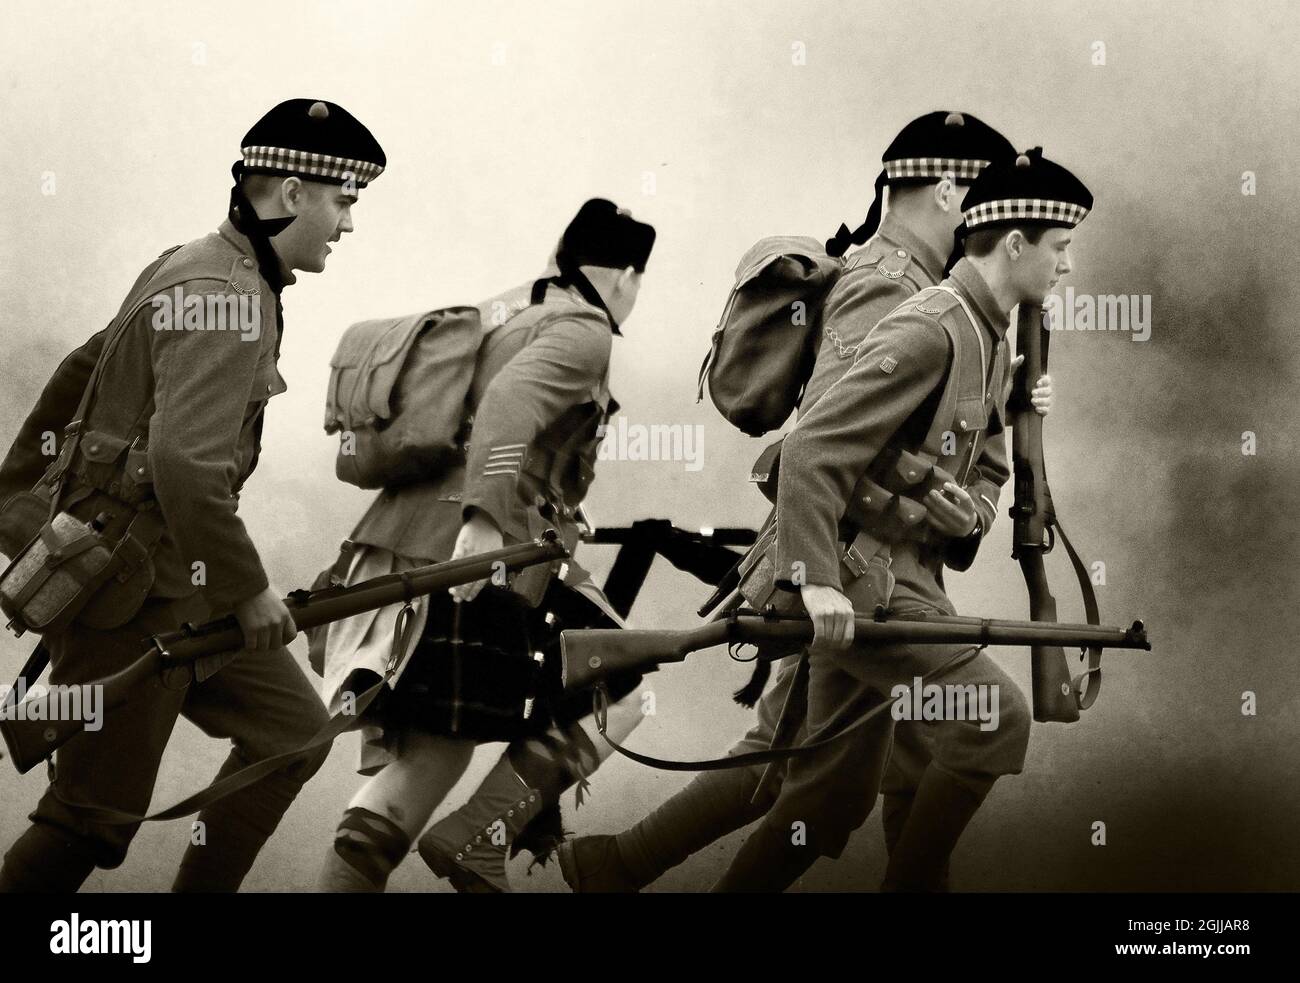 Darsteller in britischen Uniformen des ersten Weltkriegs in imitierten Kampfszenen. Stockfoto